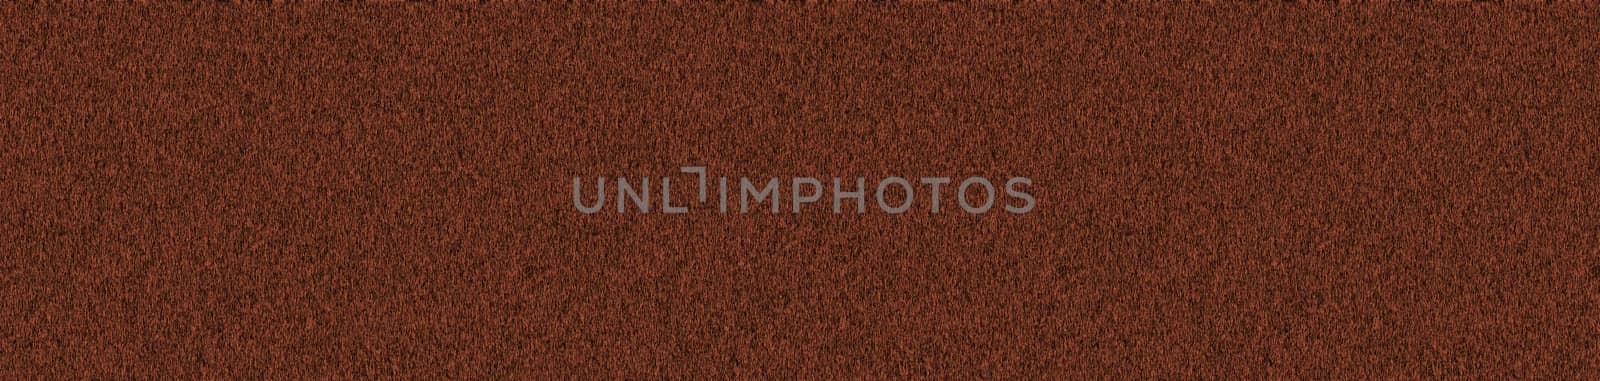 Dark brown wooden furniture surface. Old textured background. by DamantisZ